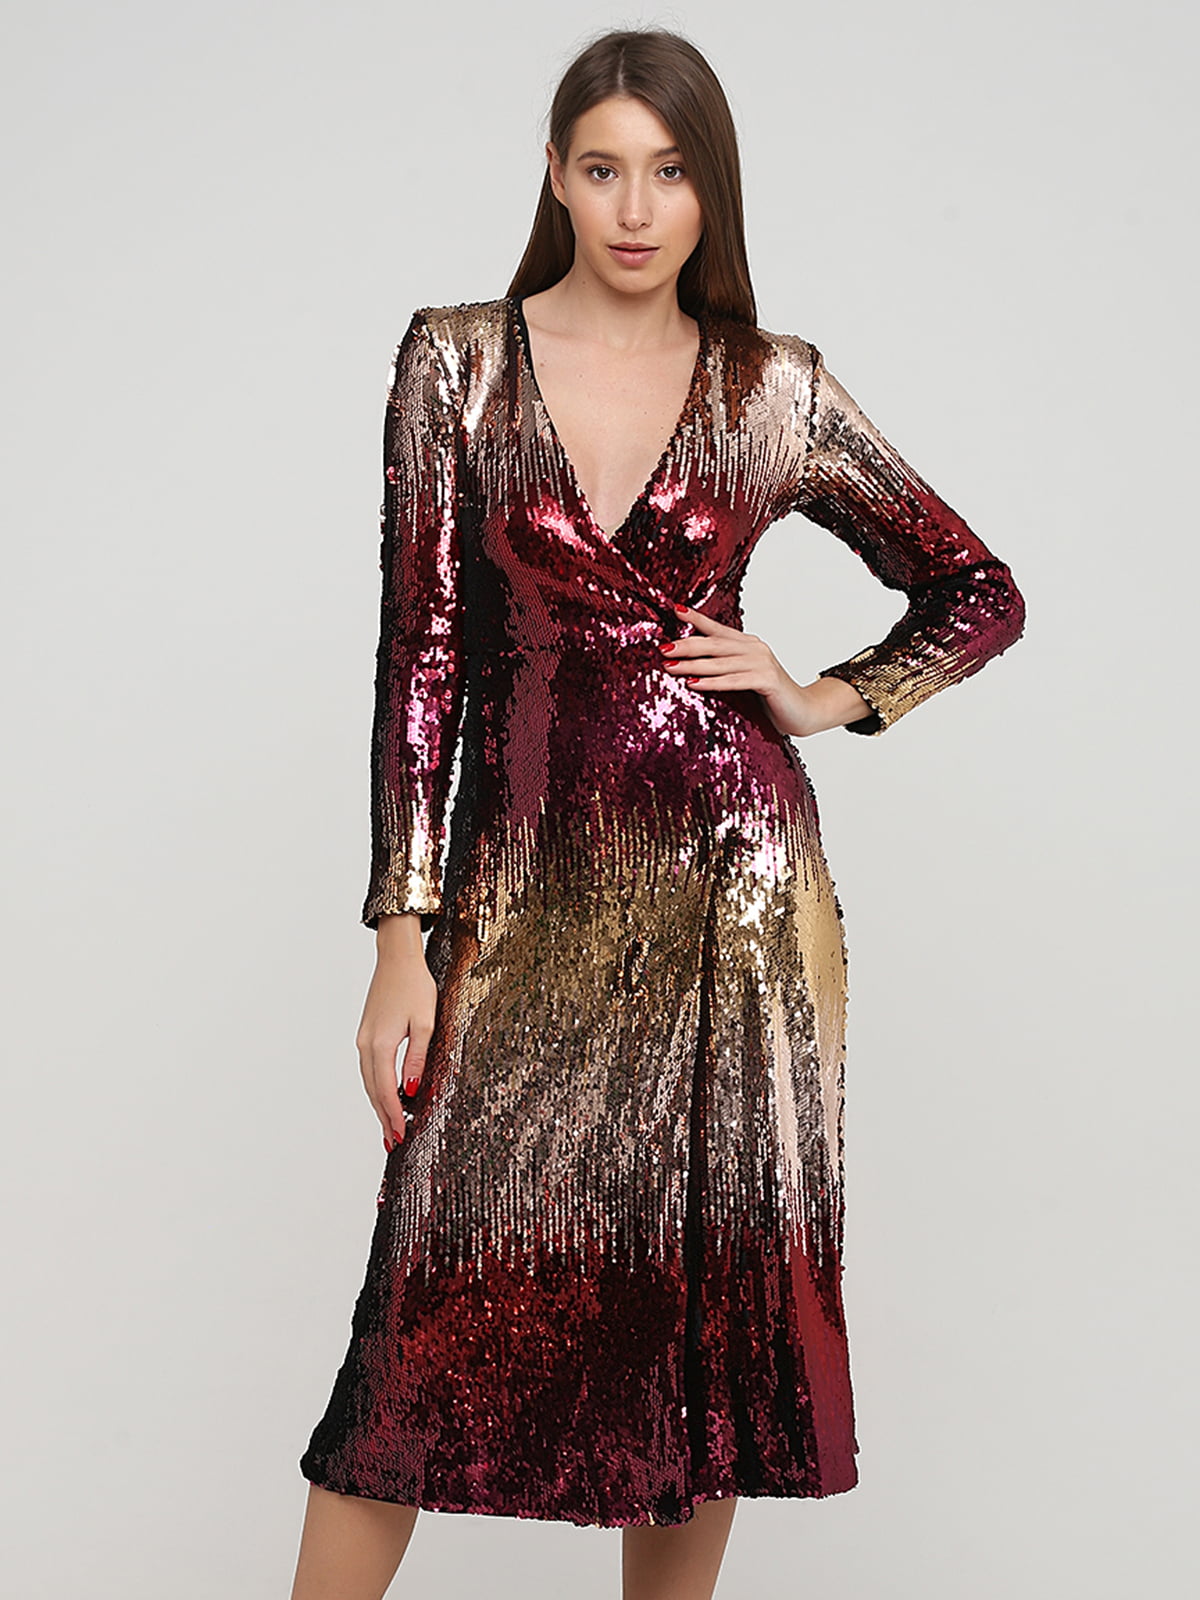 Платье бордово-золотистое, декорированное пайетками | 5898340